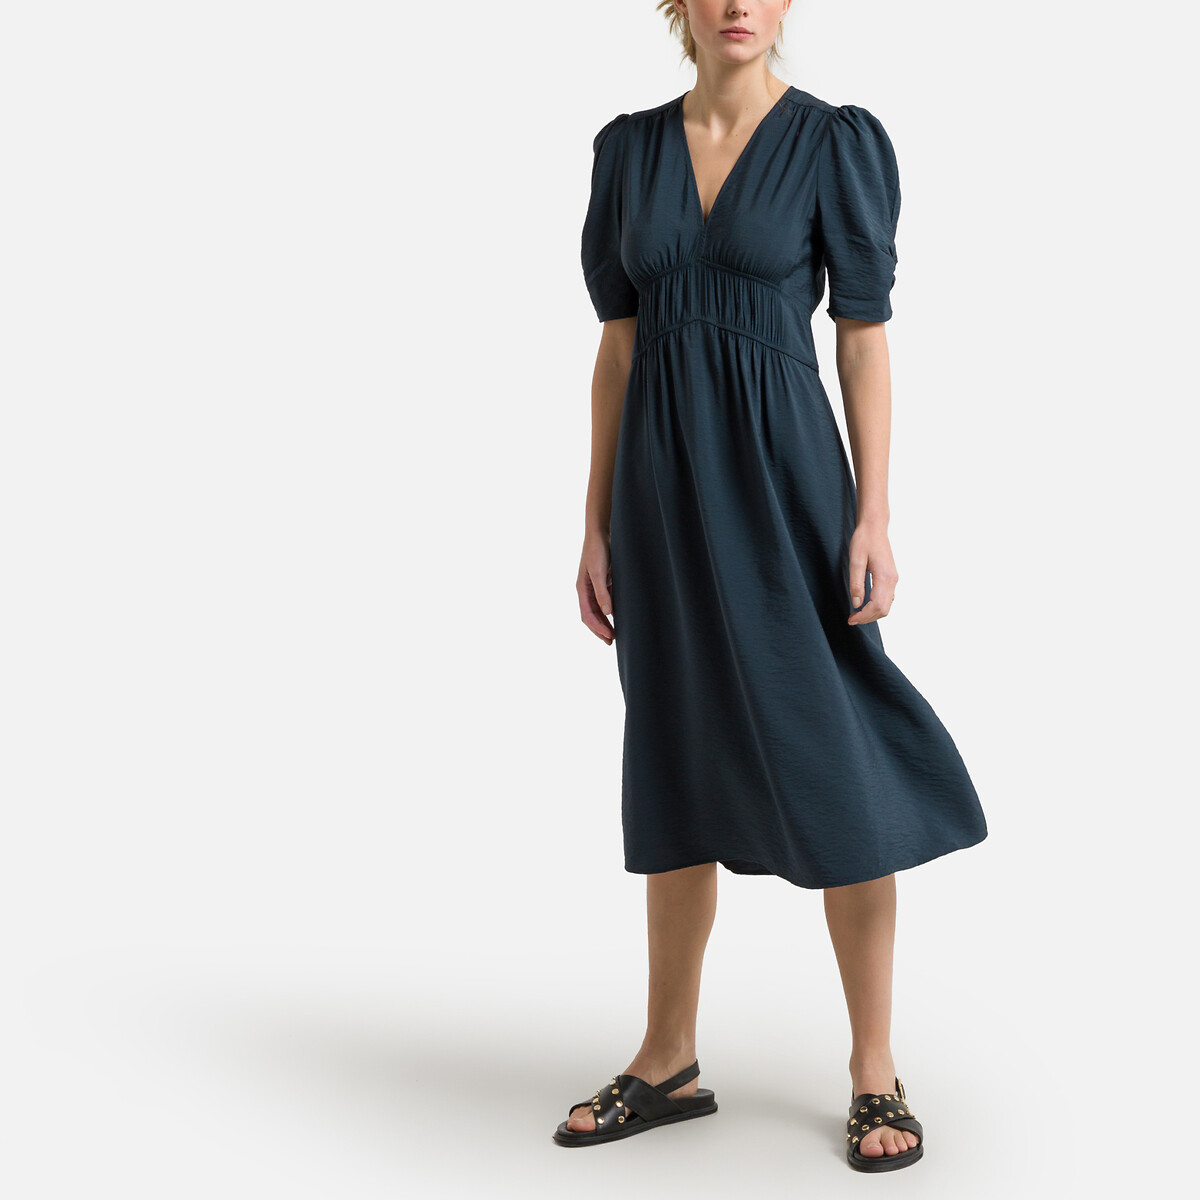 Платье BA&SH Объемного покроя с напускными рукавами LINDA 0(XS) синий, размер 0(XS) Объемного покроя с напускными рукавами LINDA 0(XS) синий - фото 1